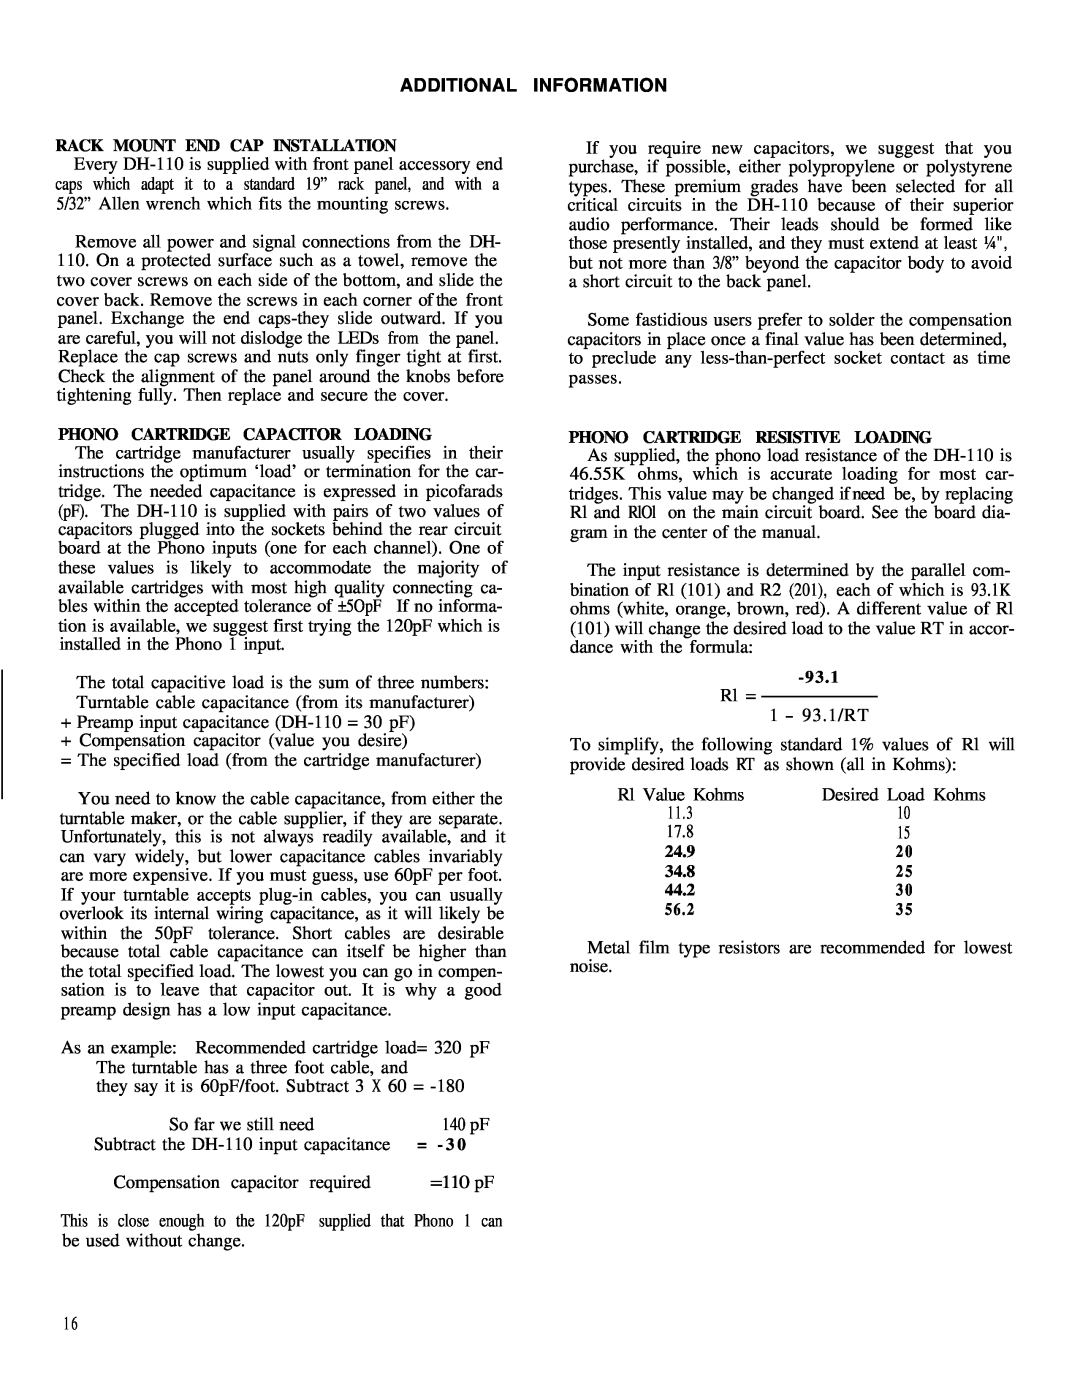 Hafler DH-110 manual Additional Information, Rl Value Kohms, Desired Load Kohms 